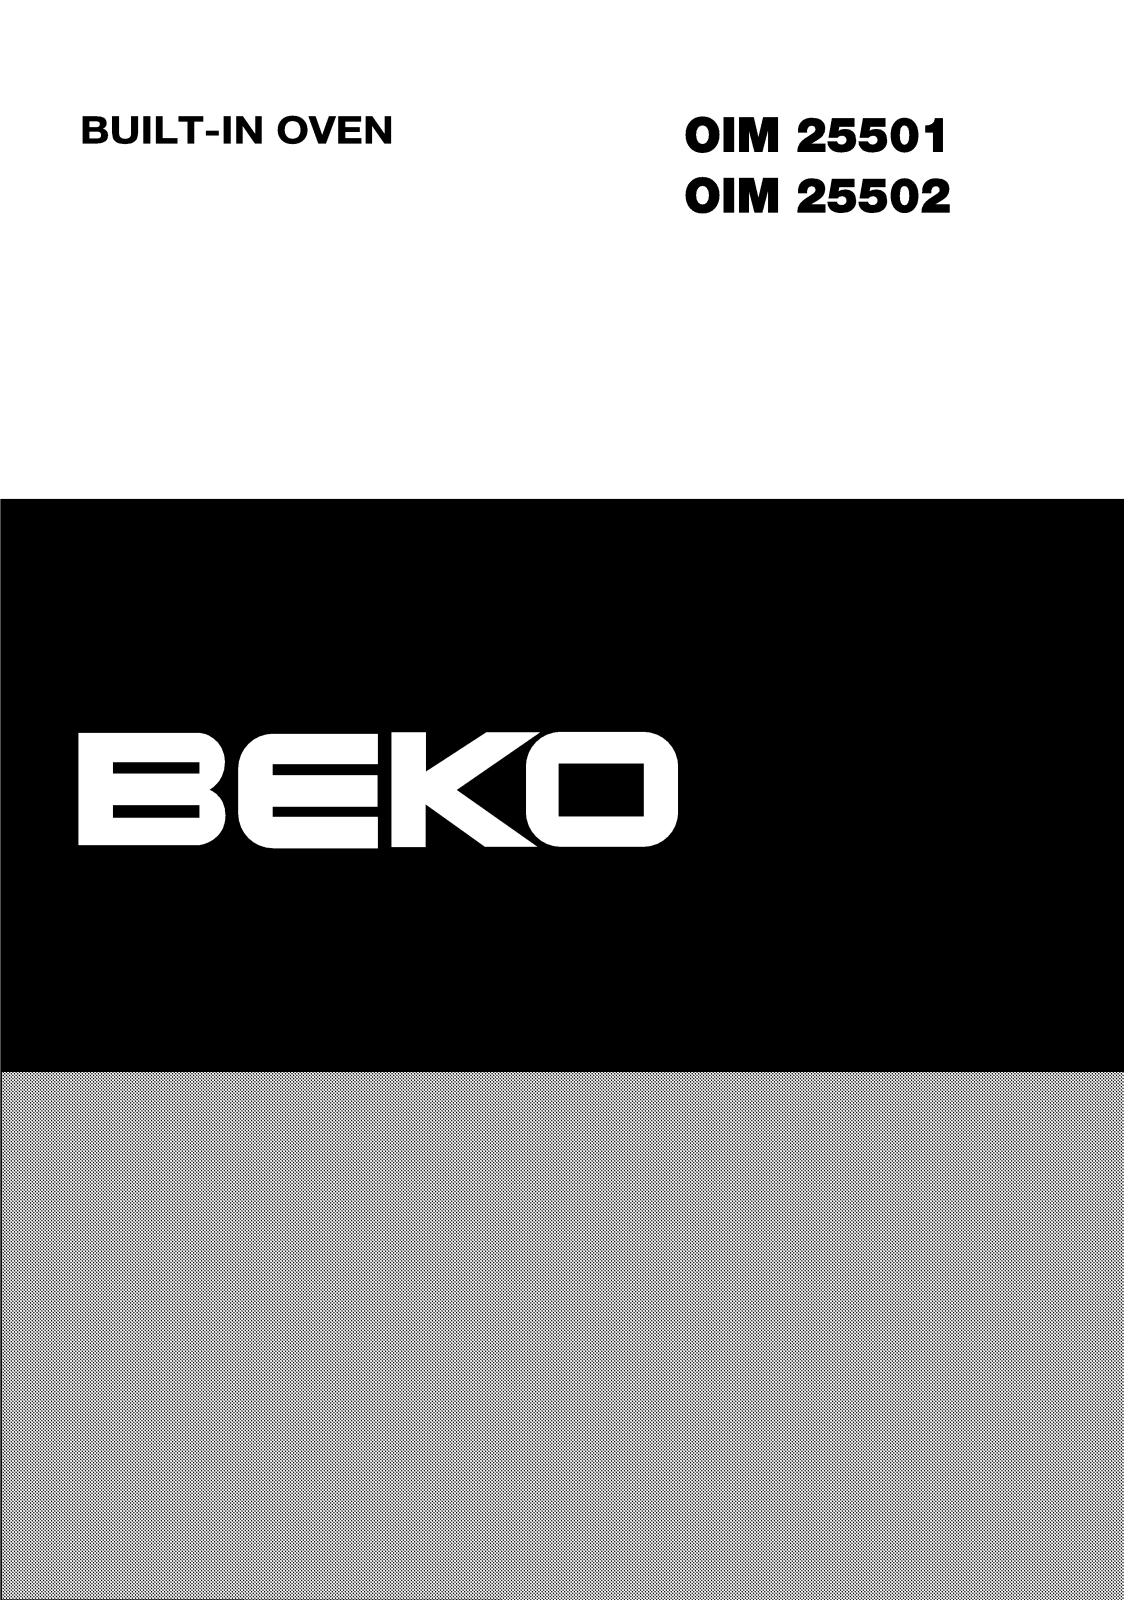 Beko OIM 25502, HIG64221, OIM 25503, OIM 25501 Manual